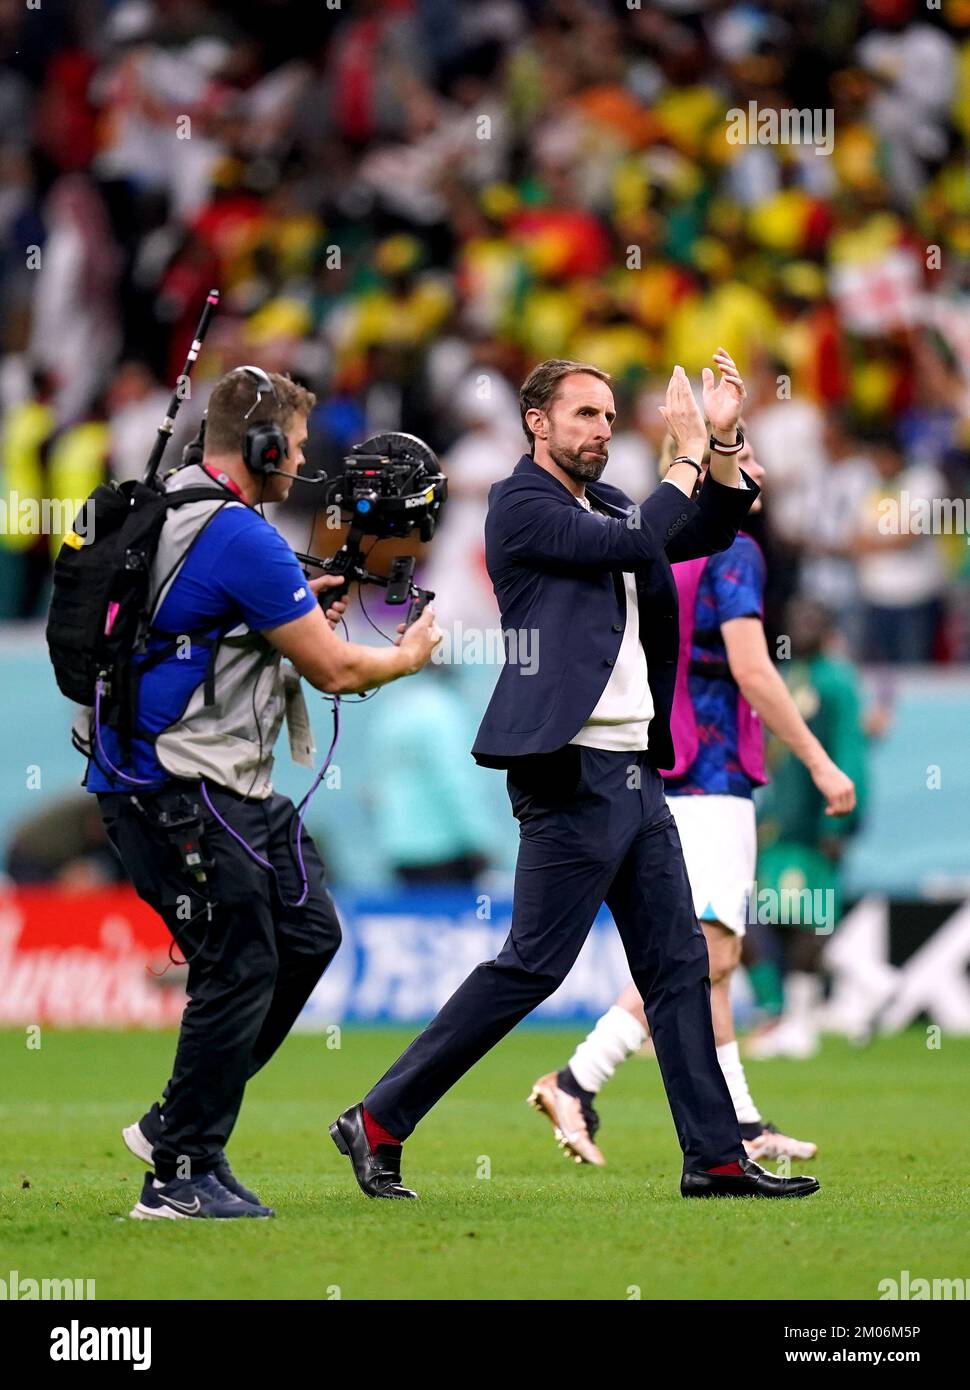 Il manager inglese Gareth Southgate applaude i tifosi alla fine della partita durante la Coppa del mondo FIFA Round of Sixteen match presso l'al-Bayt Stadium di al Khor, Qatar. Data immagine: Domenica 4 dicembre 2022. Foto Stock